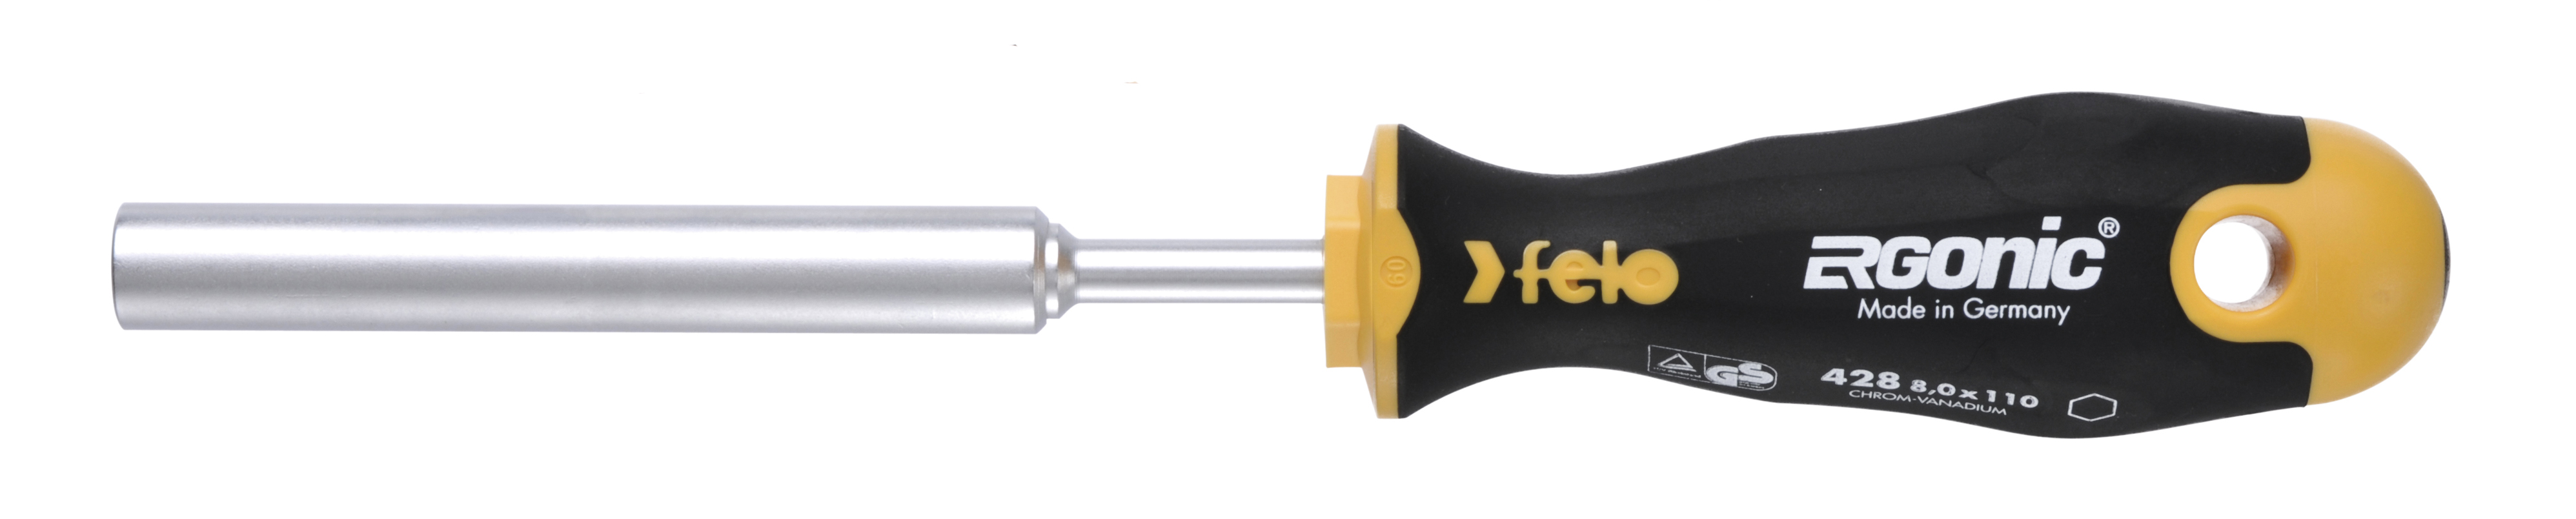 Отвертка Felo Ergonic M-TEC 42806030 торцевой ключ 6,0X110 диэлектрический ключ отвёртка izeltas 4773190070 1000v торцевой 7мм длина 230 мм